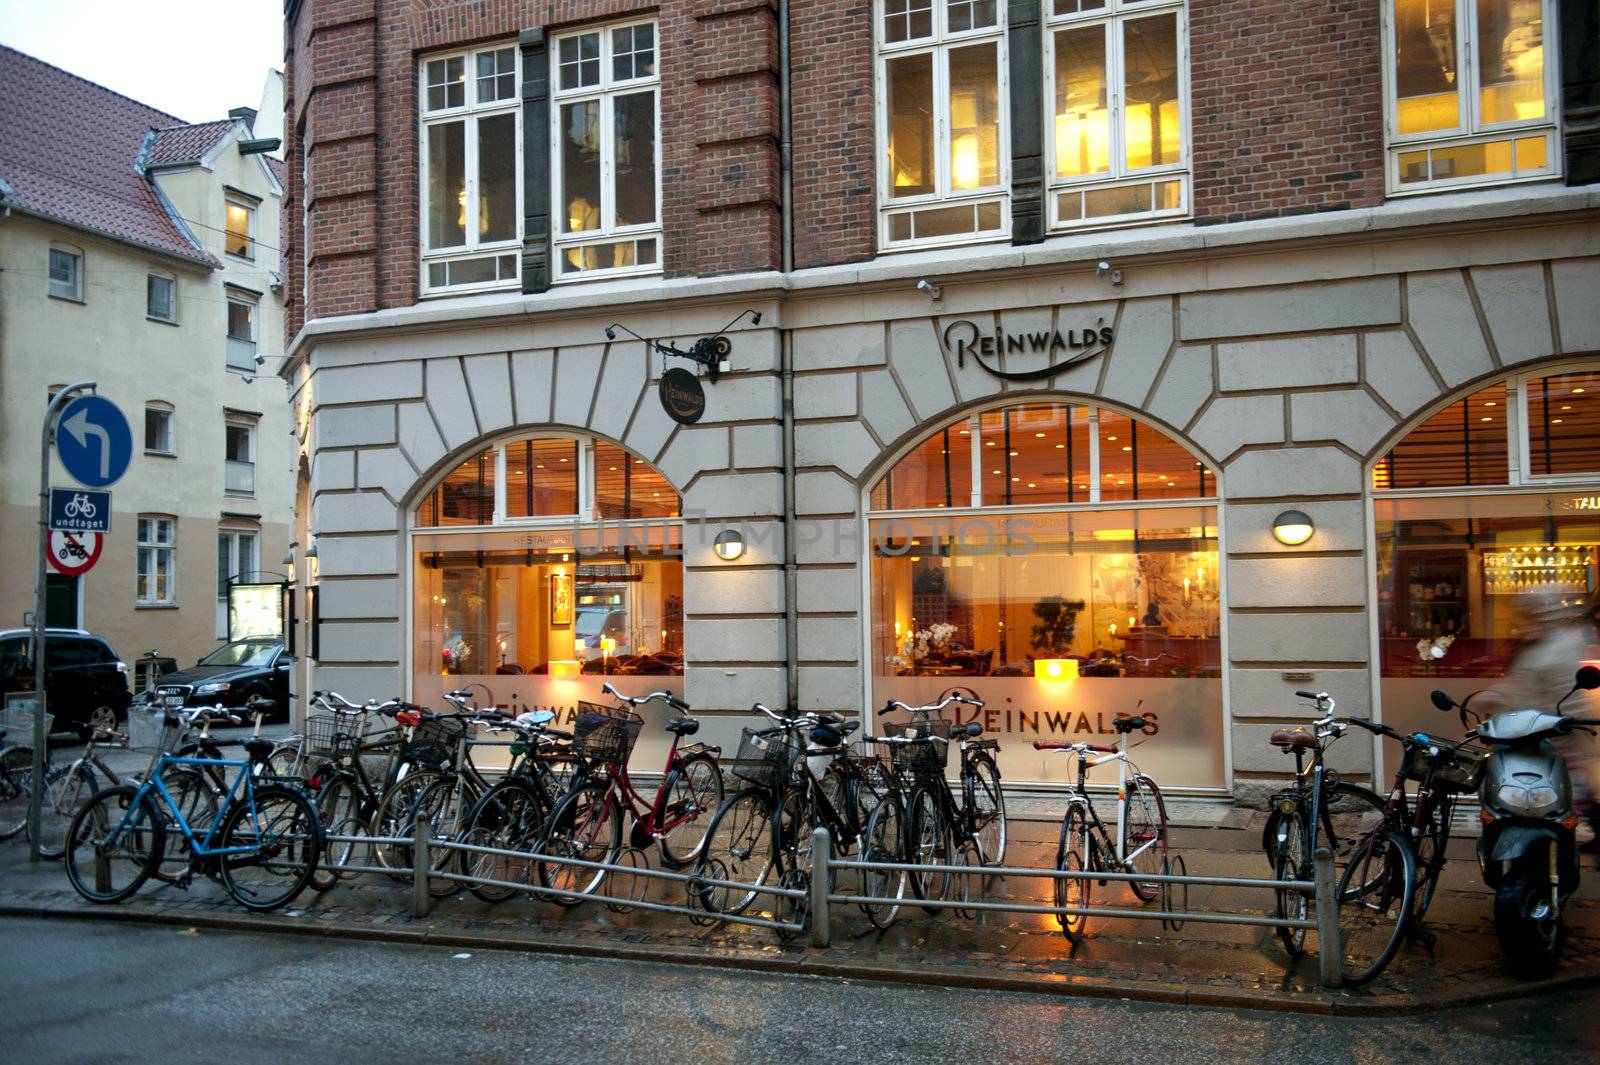 In the evening in Copenhagen by Alenmax